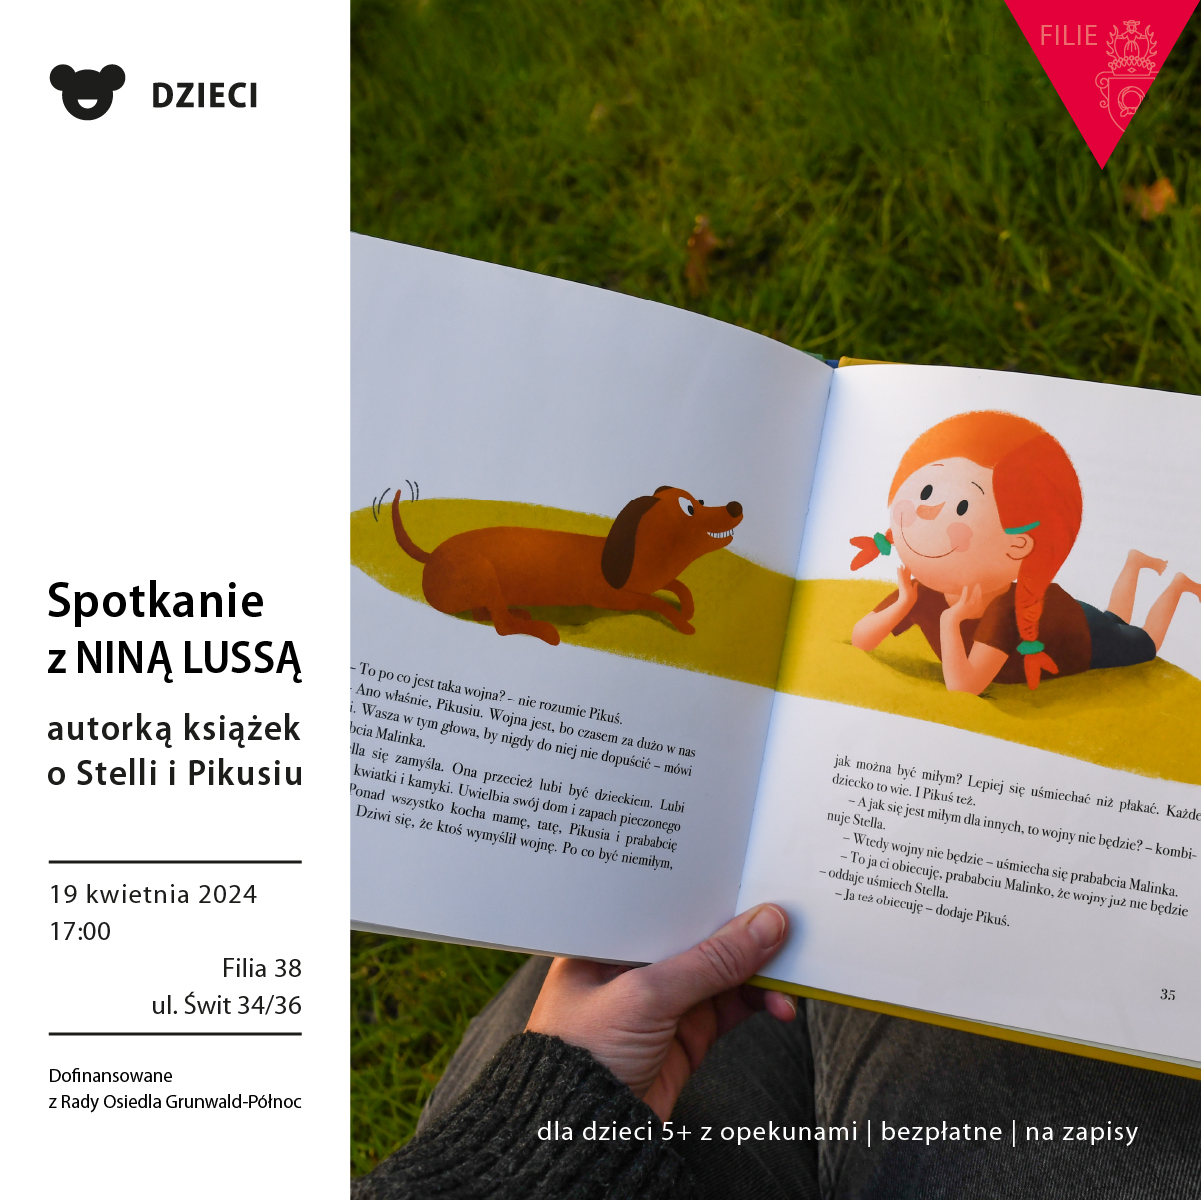 Obrazek do wydarzenia przedstawia fotografię: na tle zielonego trawnika ręka trzymająca otwartą książkę, w niej ilustracja rudowłosej uśmiechniętej dziewczynki i jamnika.